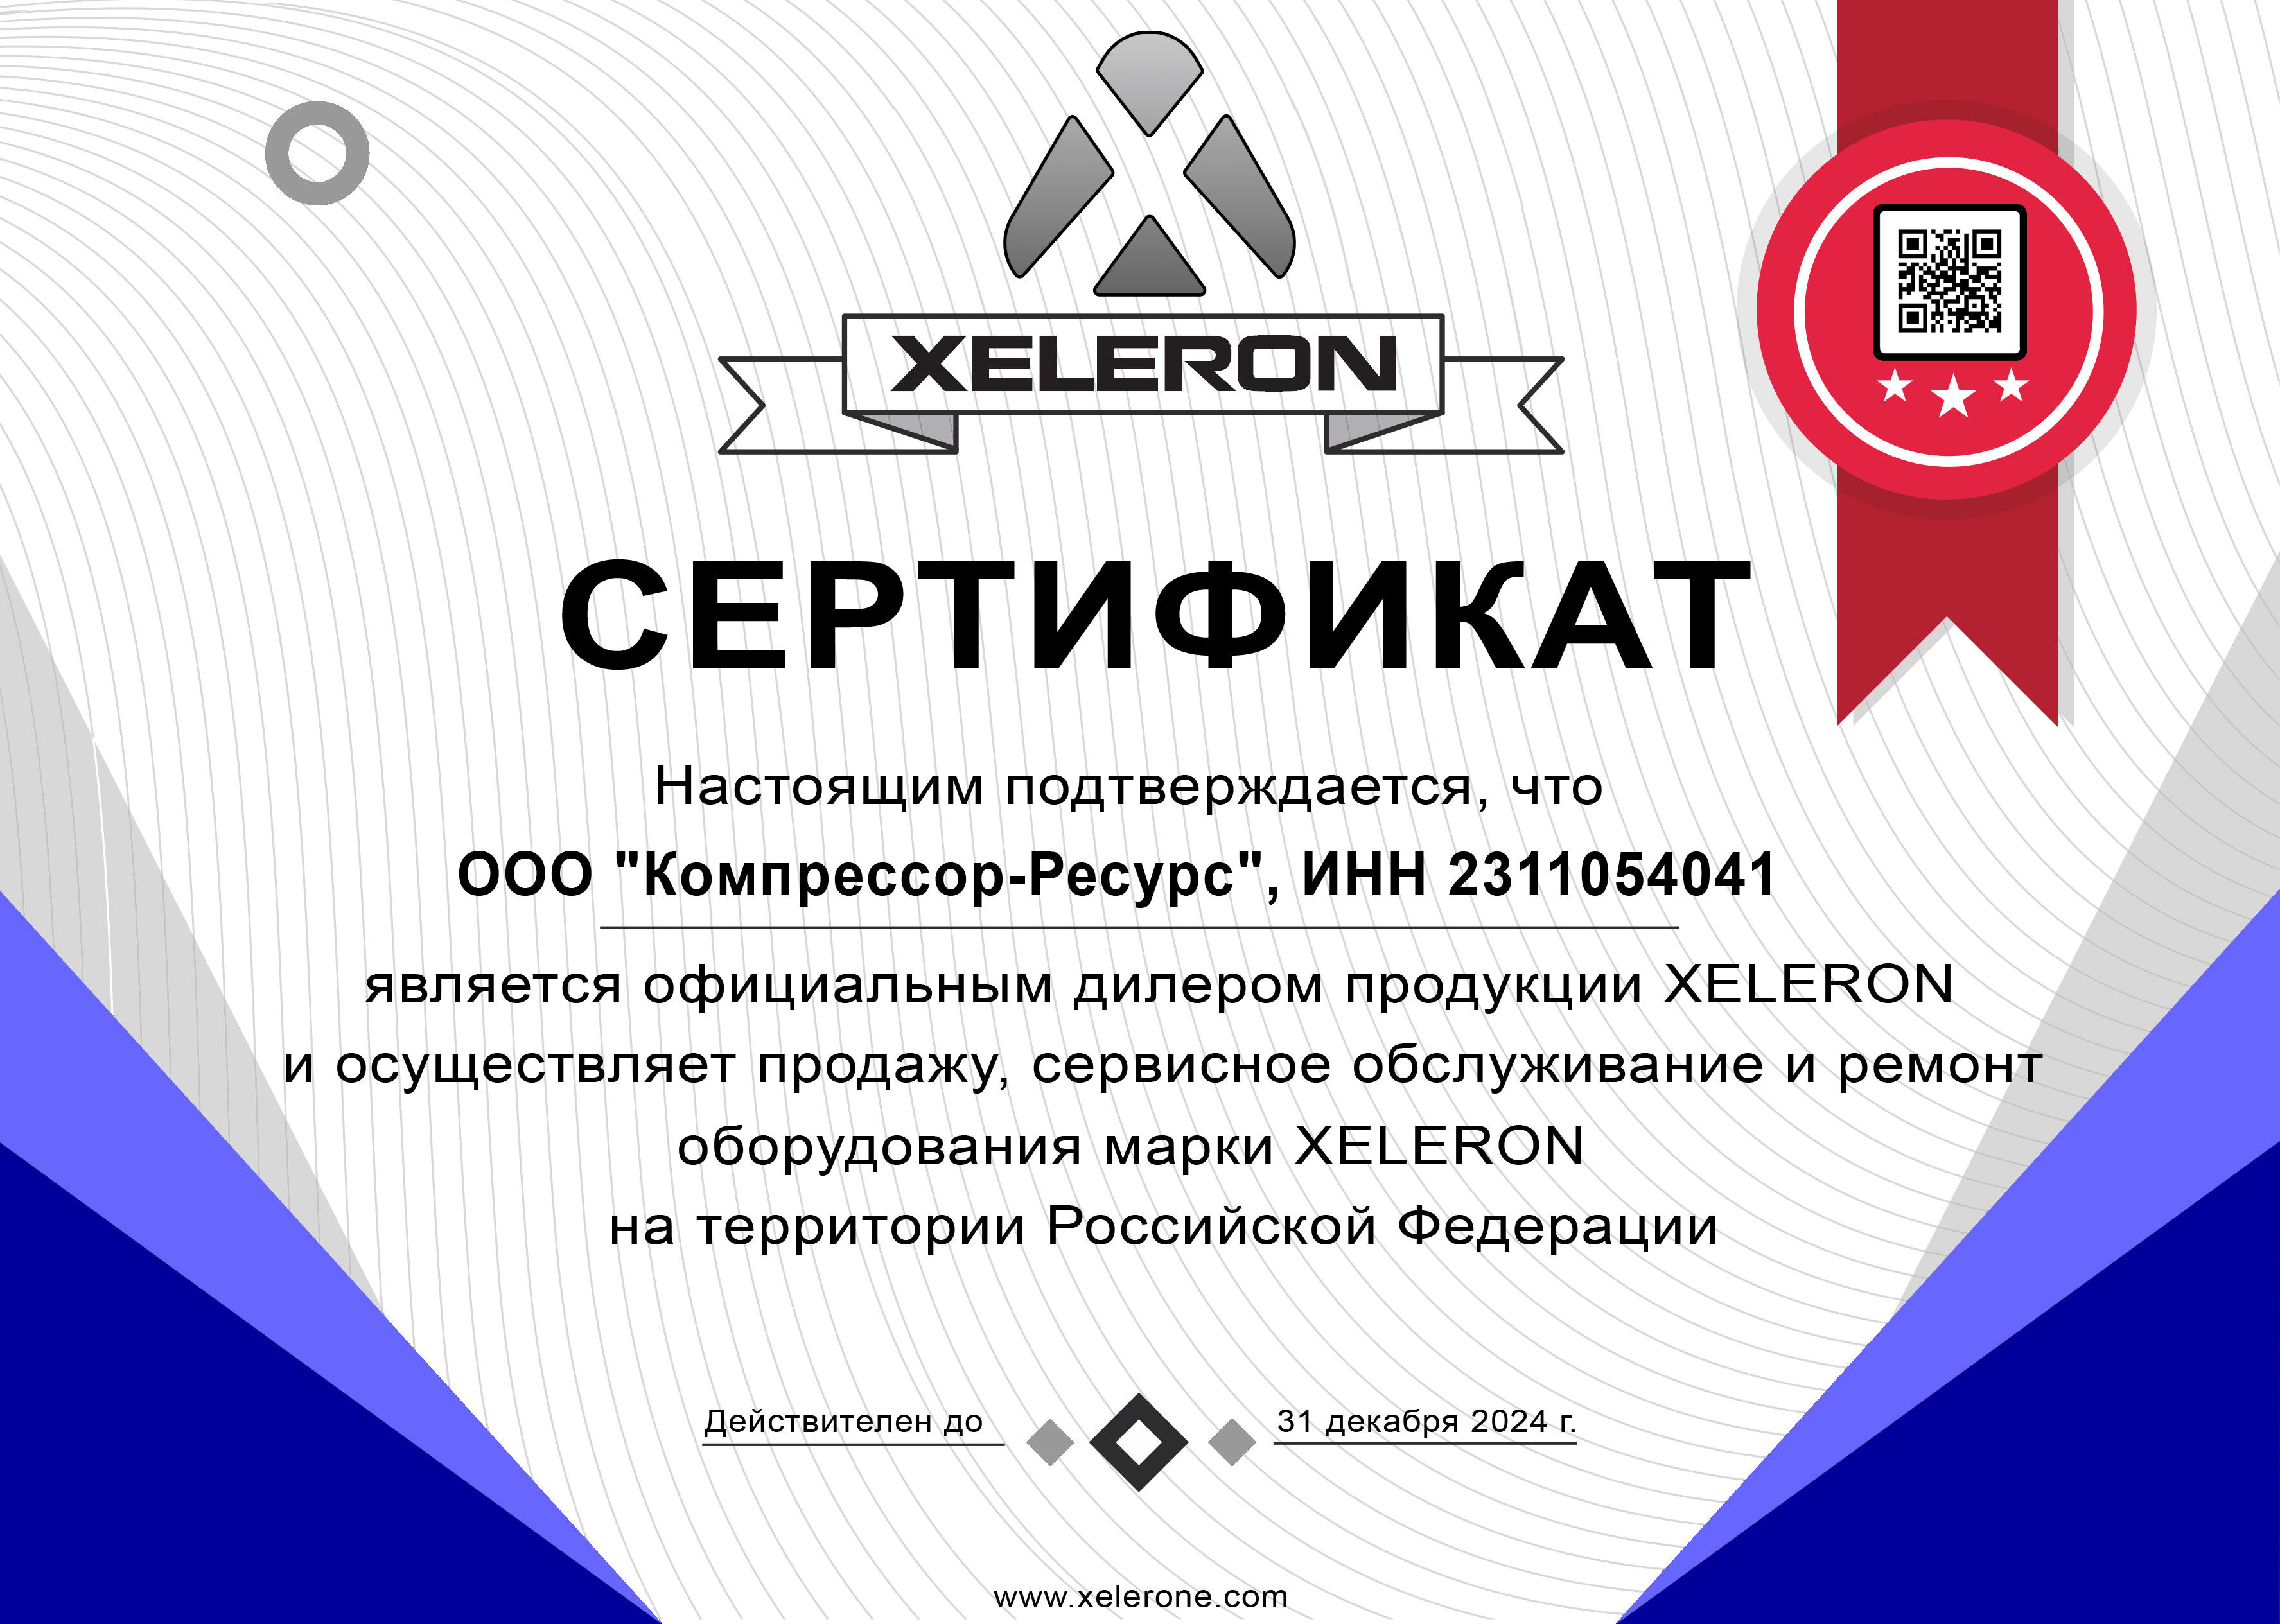 ООО "Компрессор-ресурс" официальный дилер Xeleron